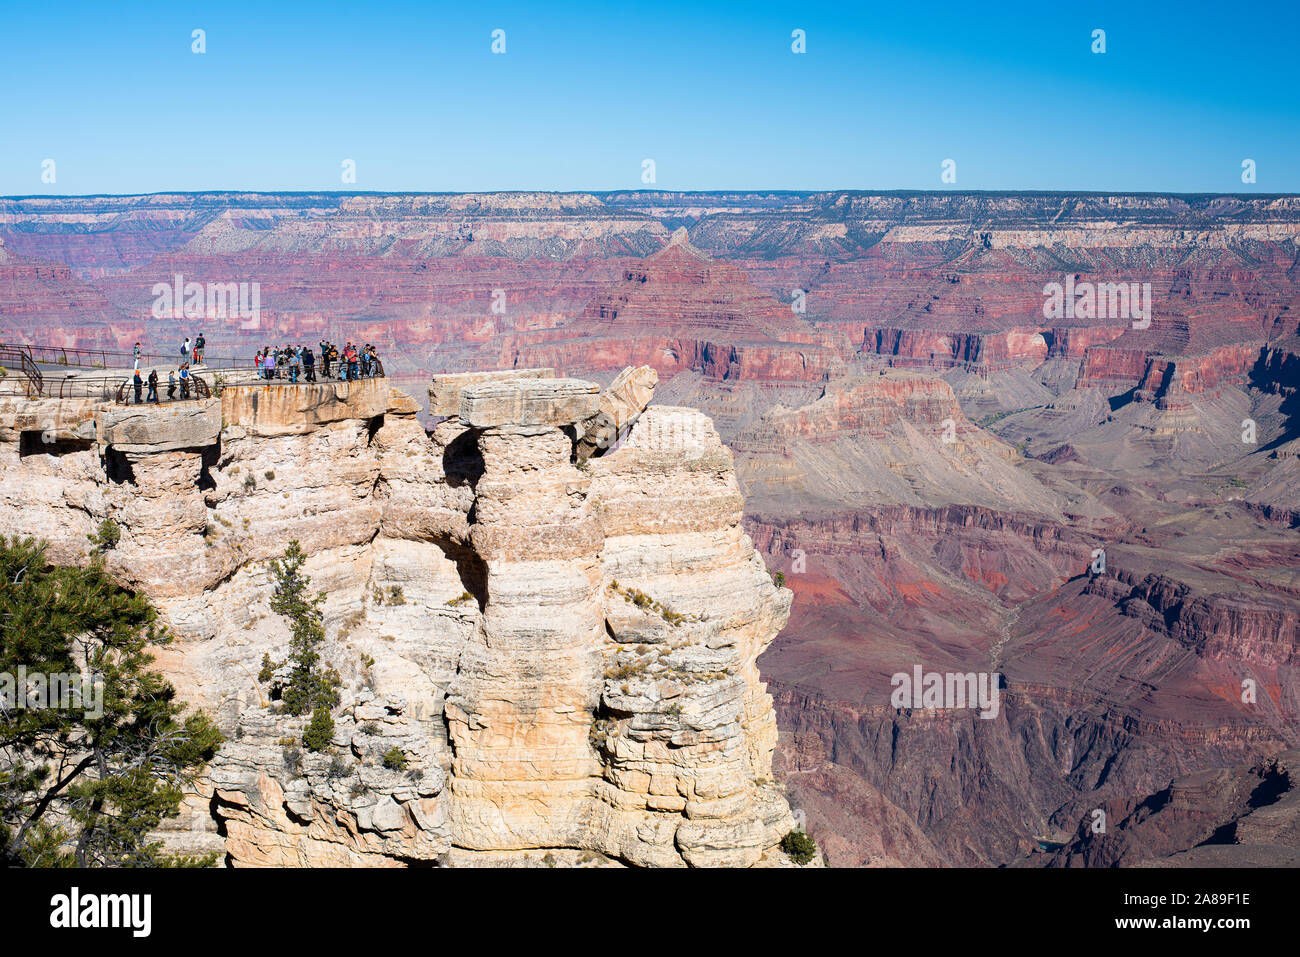 Grand Canyon Arizona de multiples points de vue haute résolution. Banque D'Images